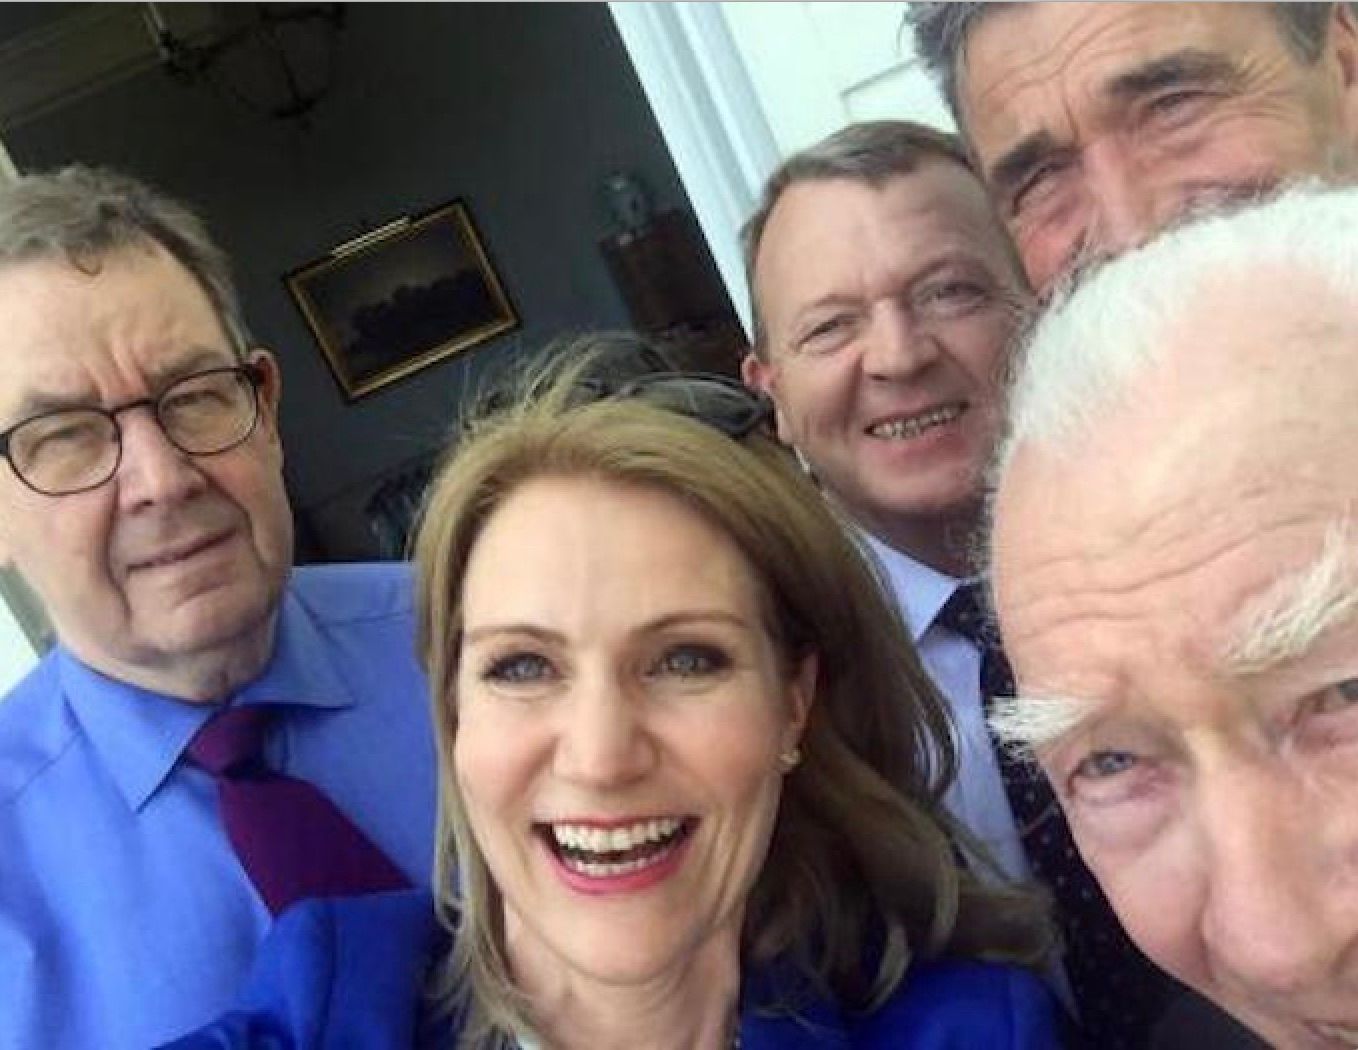 Fem statsministre på slap line - eller i hvert fald under mere afslappede former, end vi normalt oplever dem. Det er tiltrængt, og det giver os et godt indblik i livet på den politiske top. Selfie fra serien.